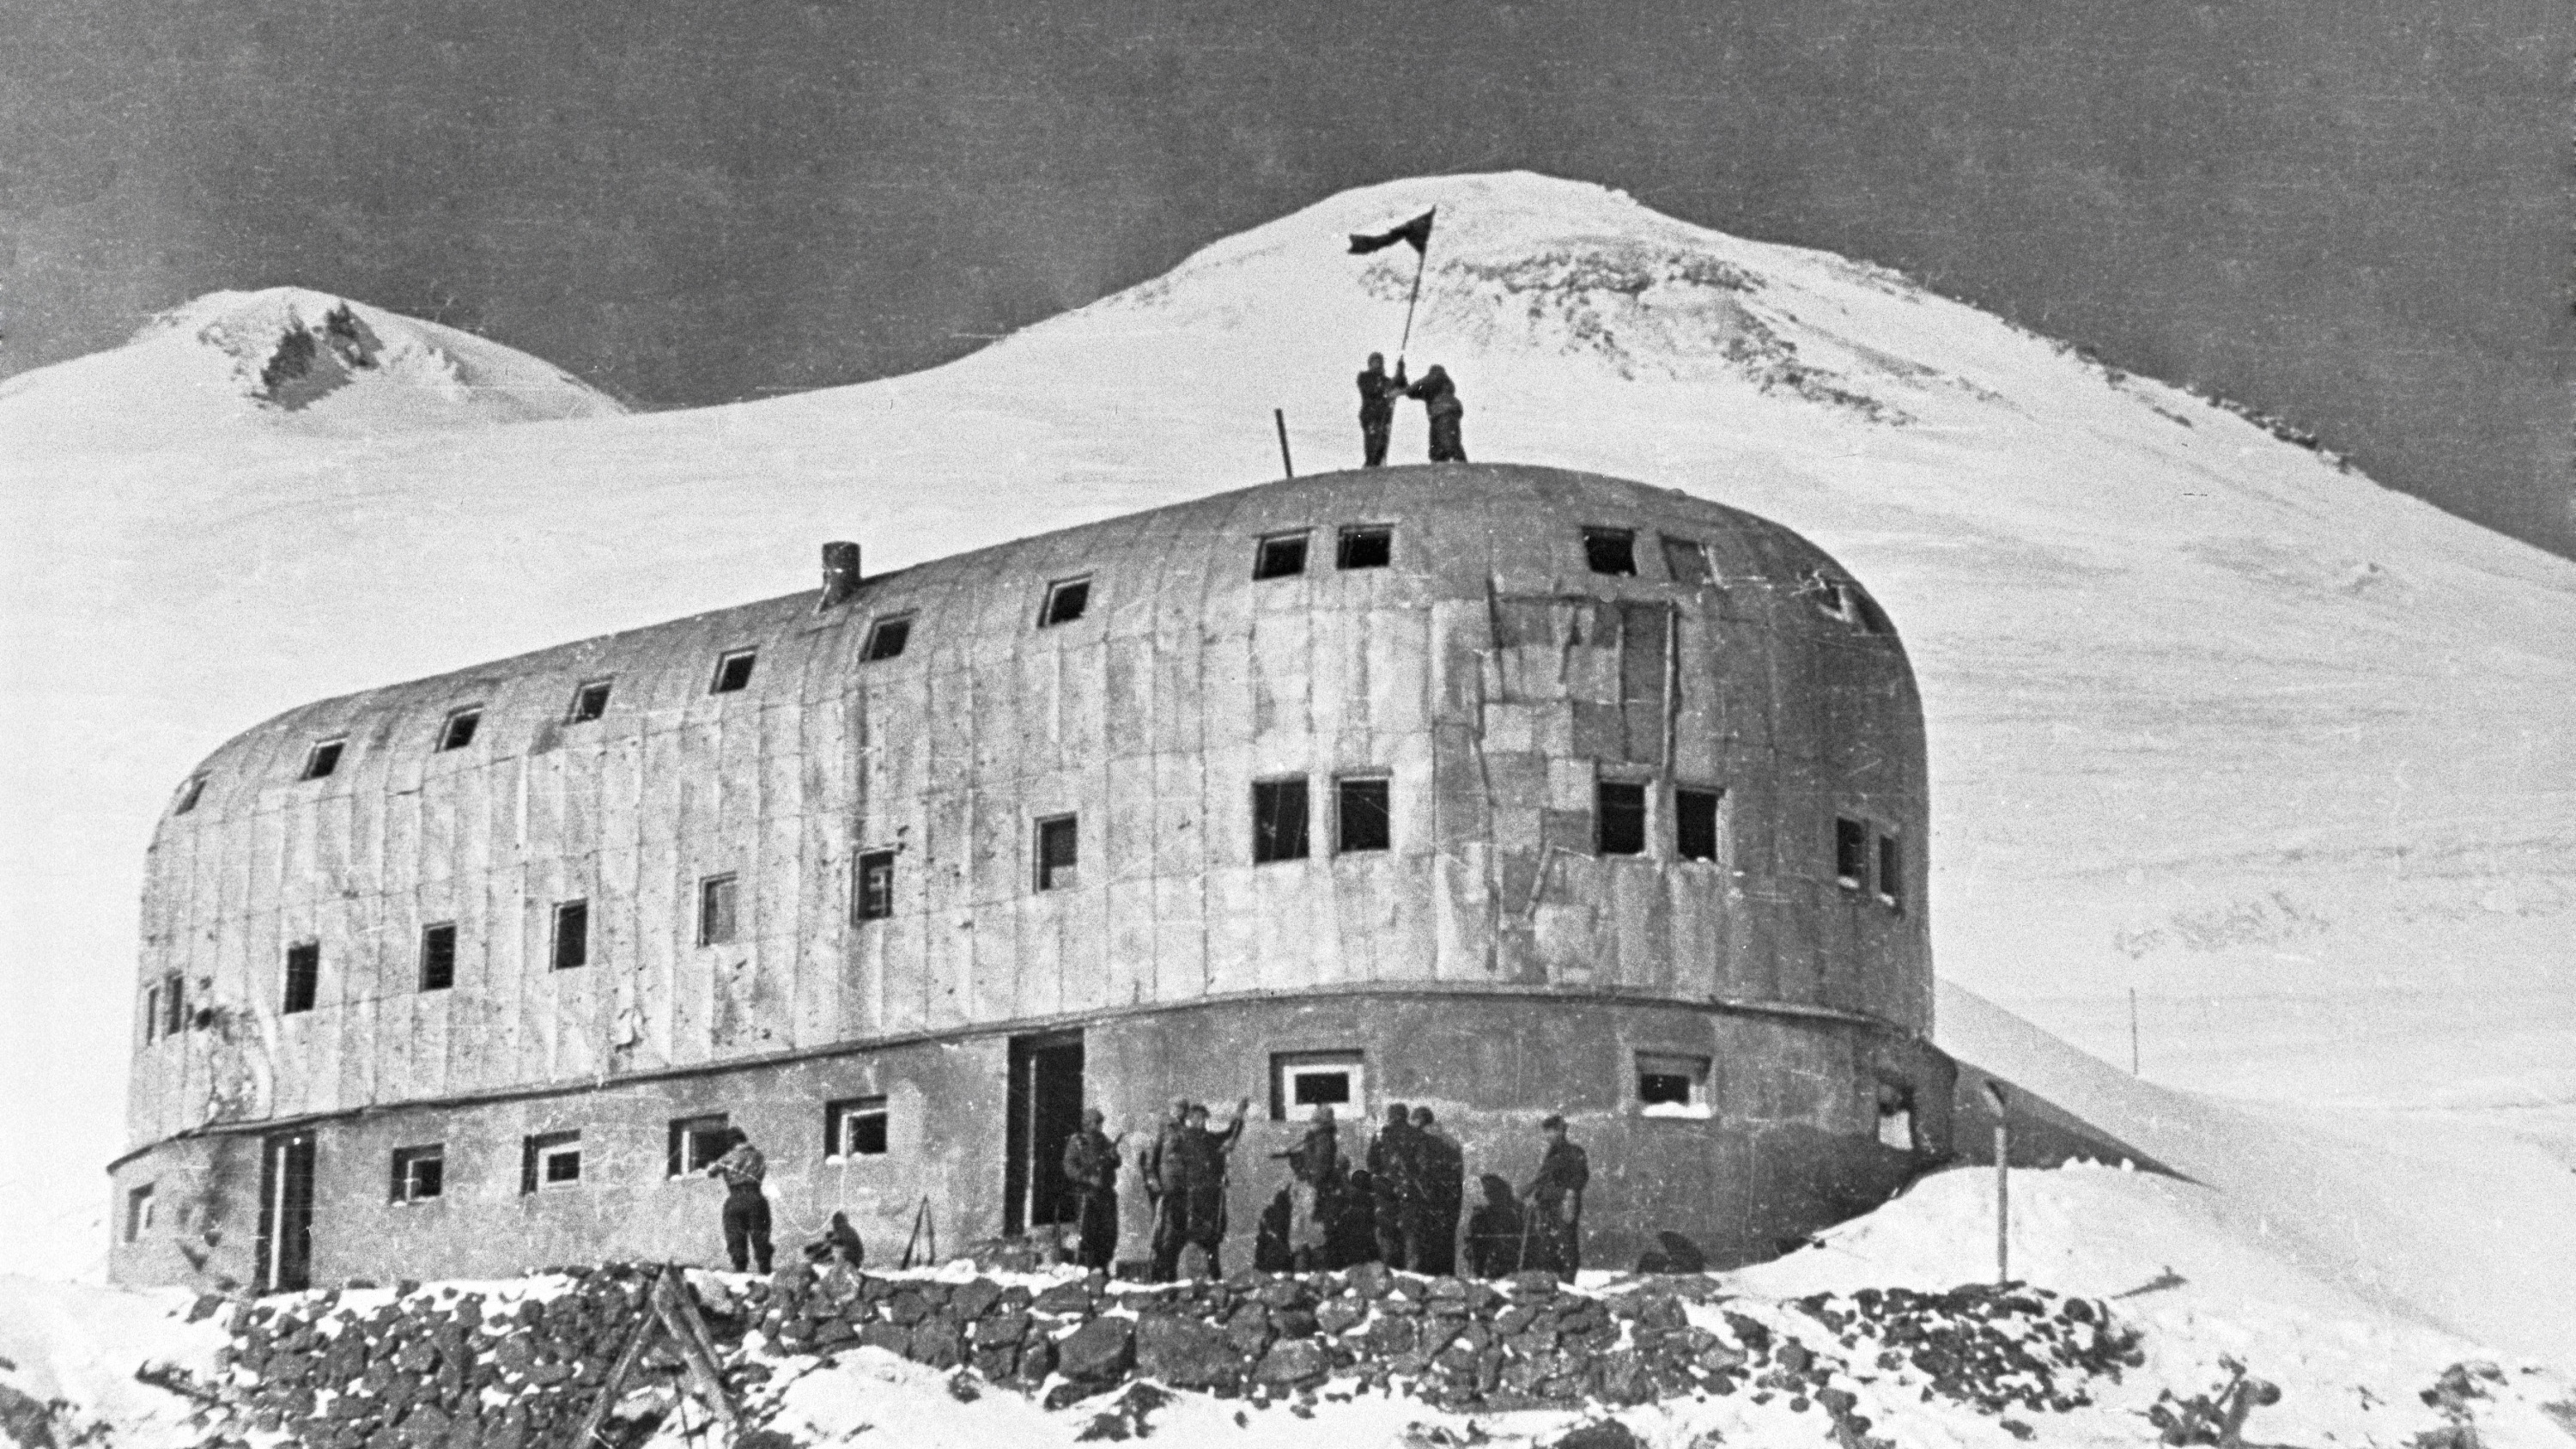 Аэродром в скале. Гора Эльбрус гостиница "приют одиннадцати". Приют 11 на Эльбрусе 1943. Приют 11 на Эльбрусе немцы. Приют 11 битва за Кавказ.